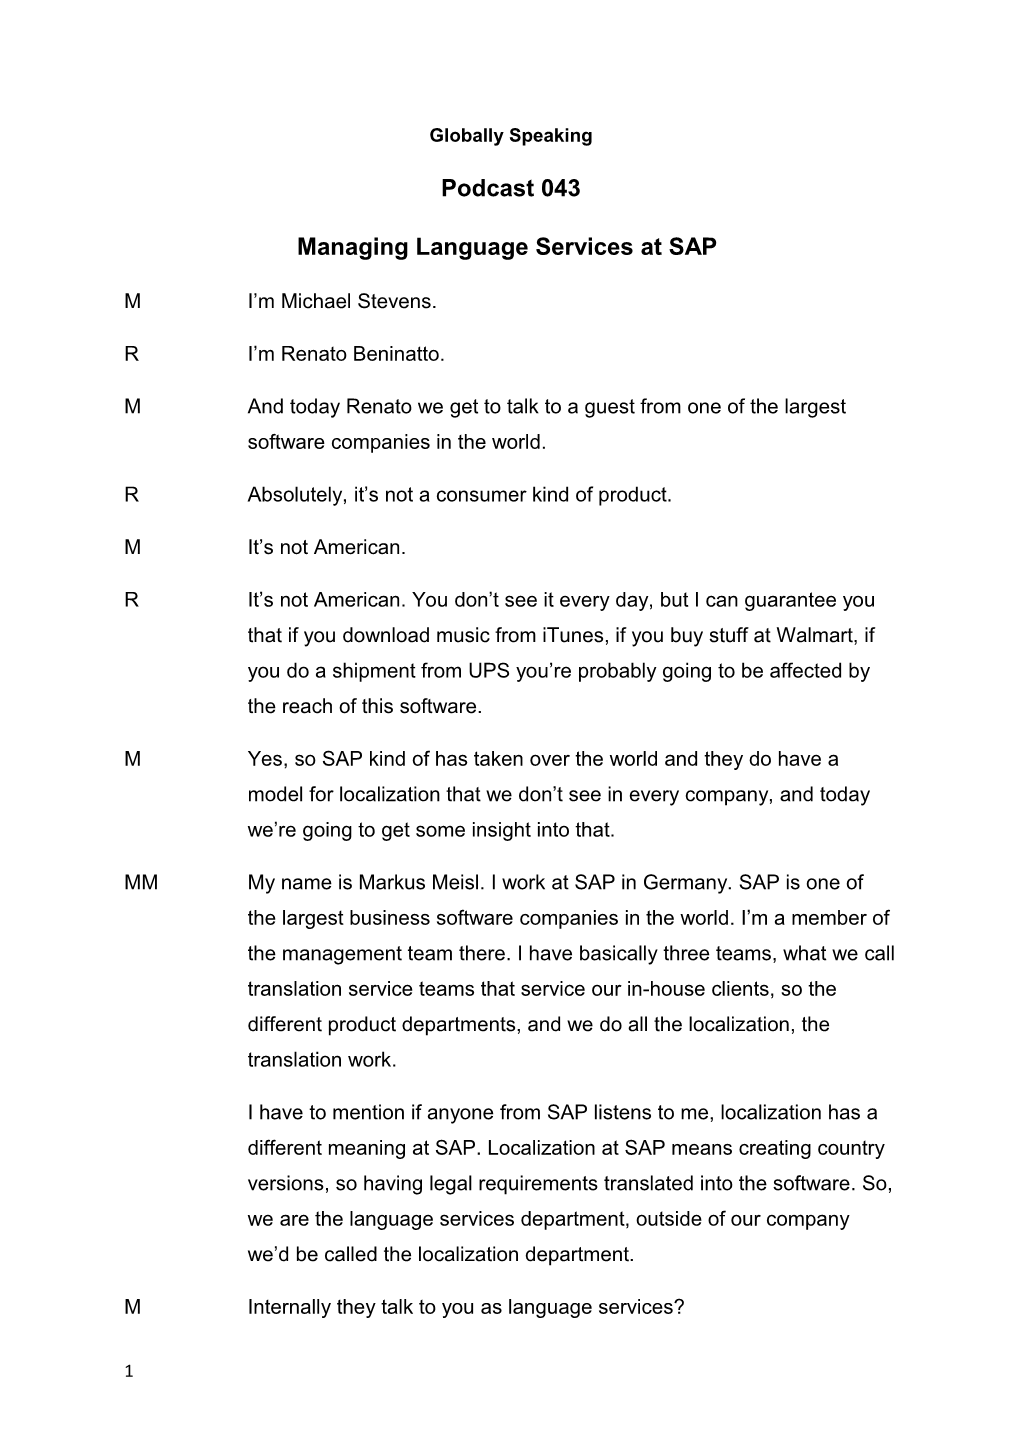 Managing Language Services at SAP